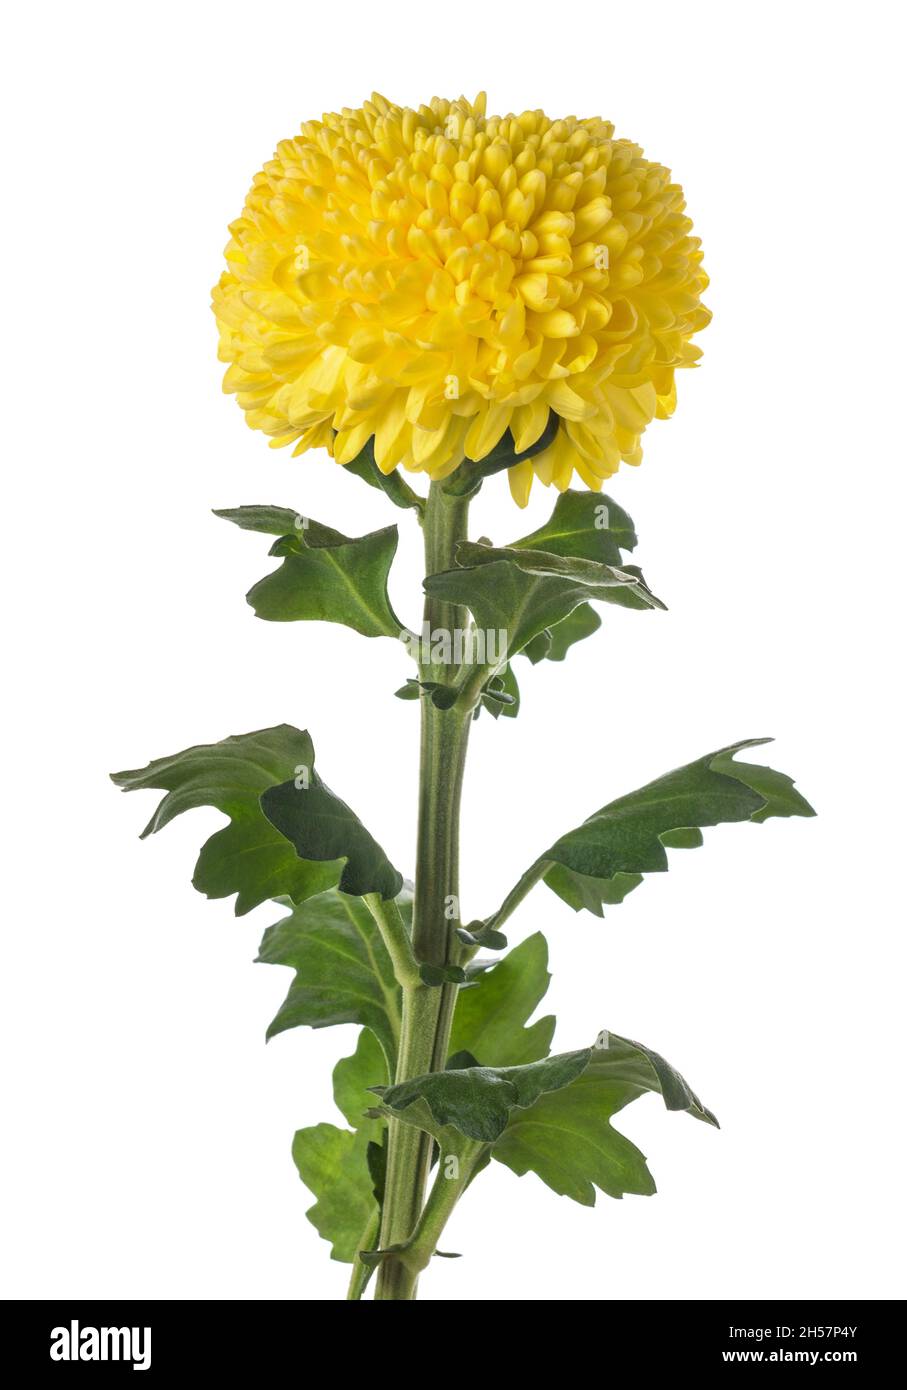 Bel fiore palla gialla immagini e fotografie stock ad alta risoluzione -  Alamy